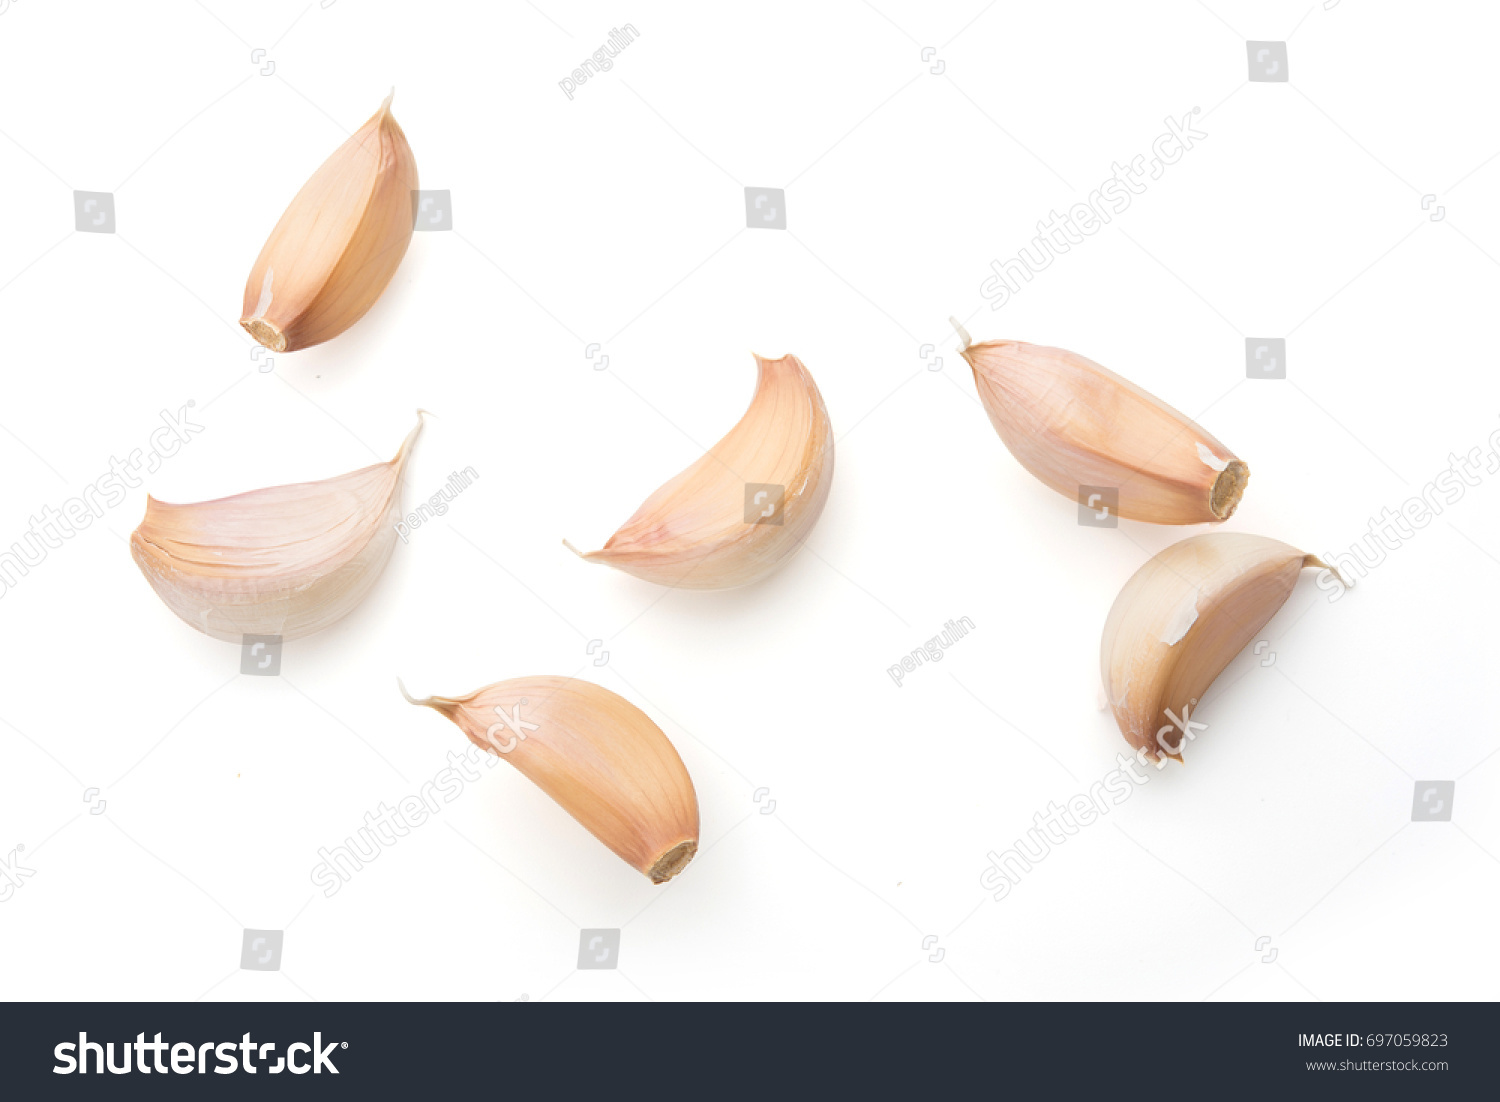 Garlic set isolated on white background #697059823